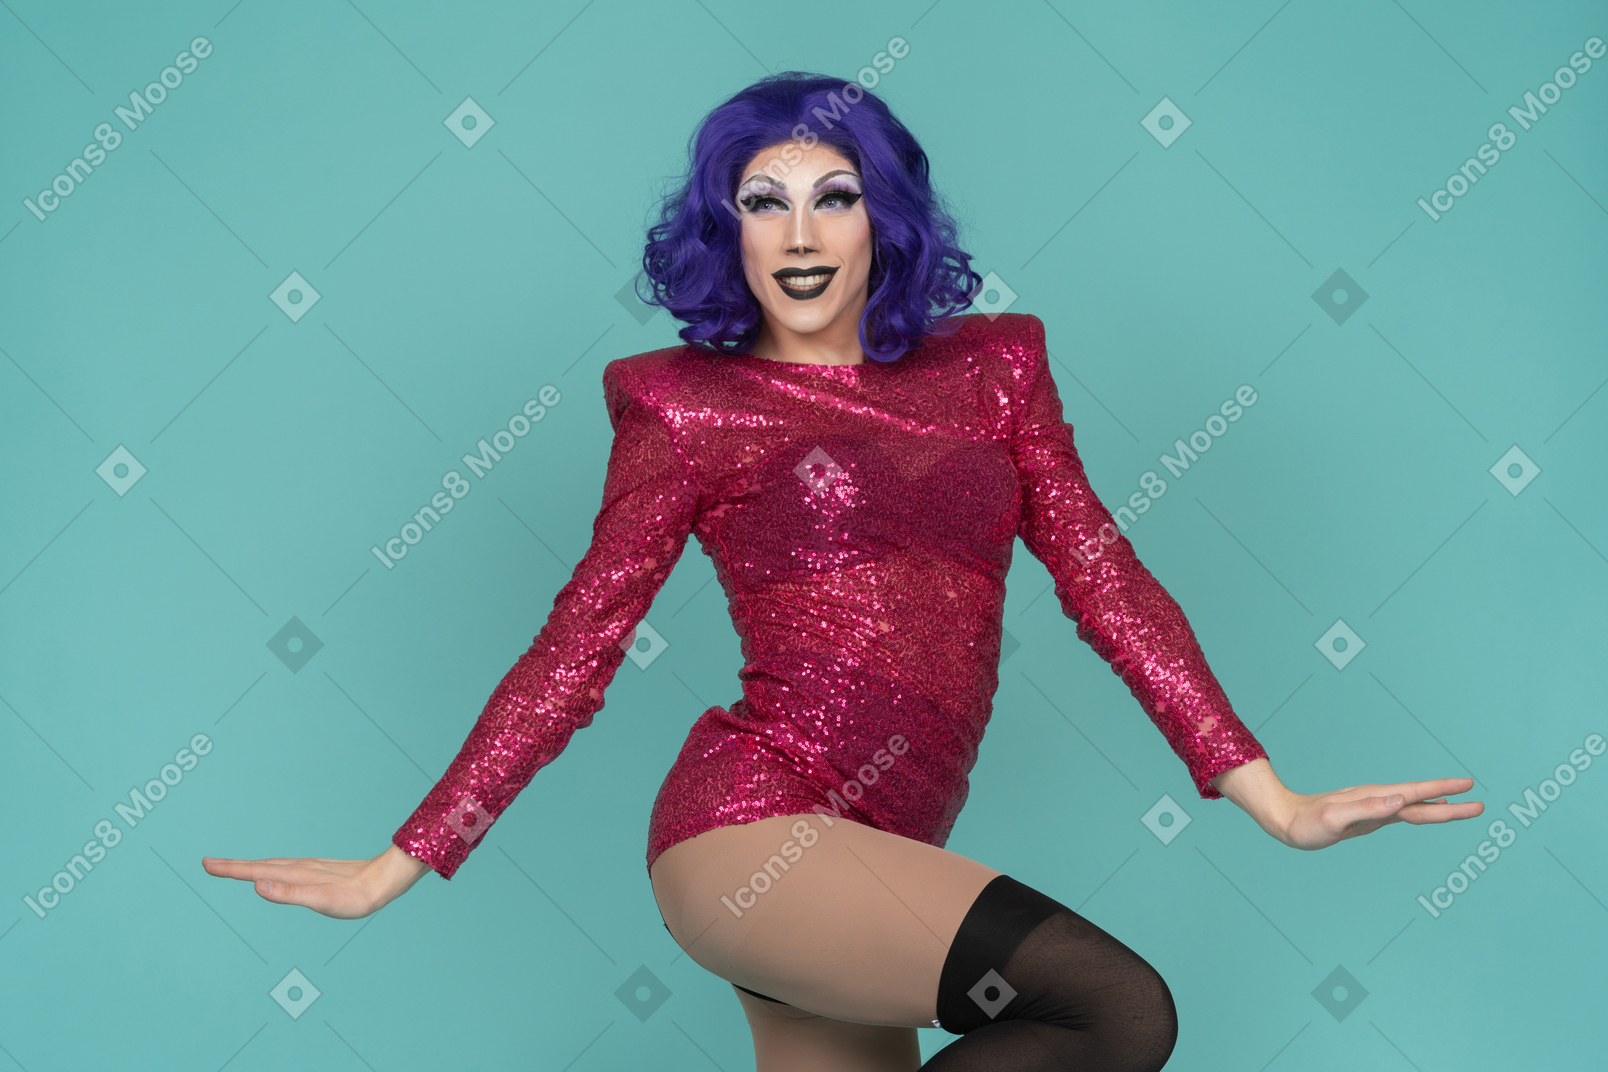 Ritratto di una drag queen che solleva l'anca mentre volteggia